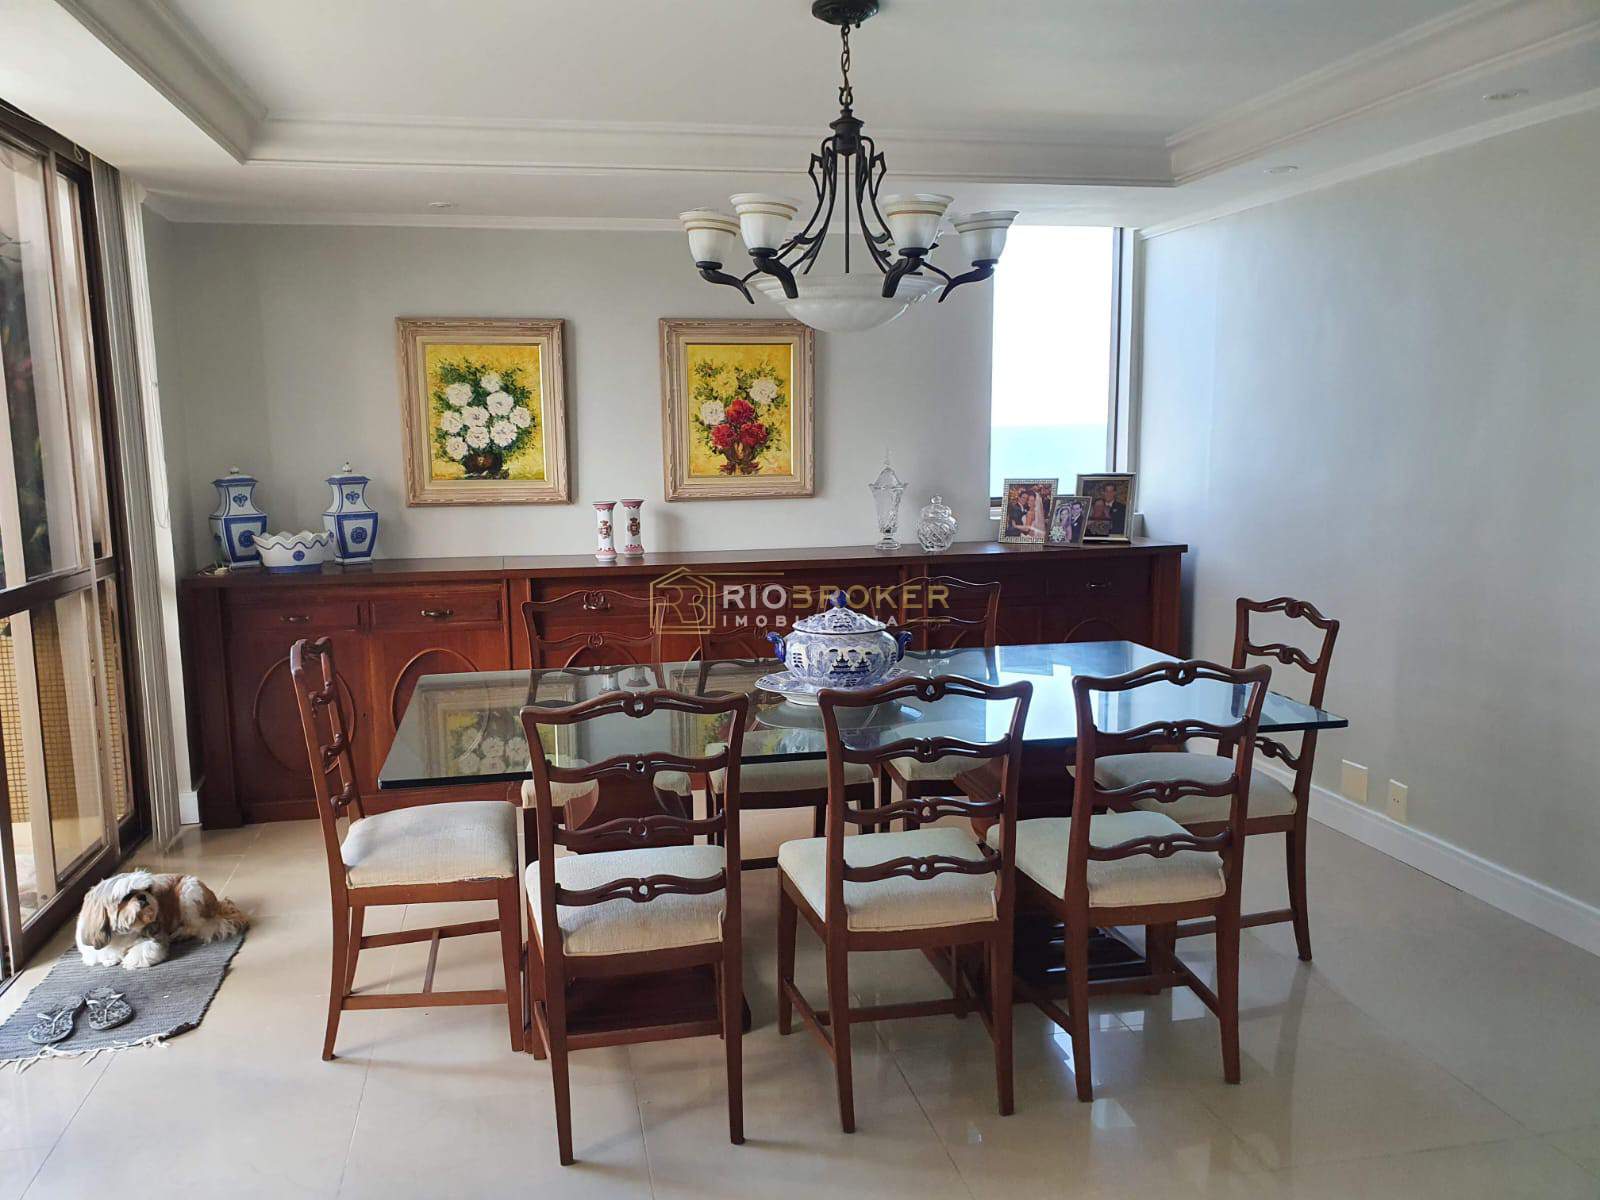 Apartamento de 4 quartos à venda - Barra da Tijuca - Condomínio Barra Mares